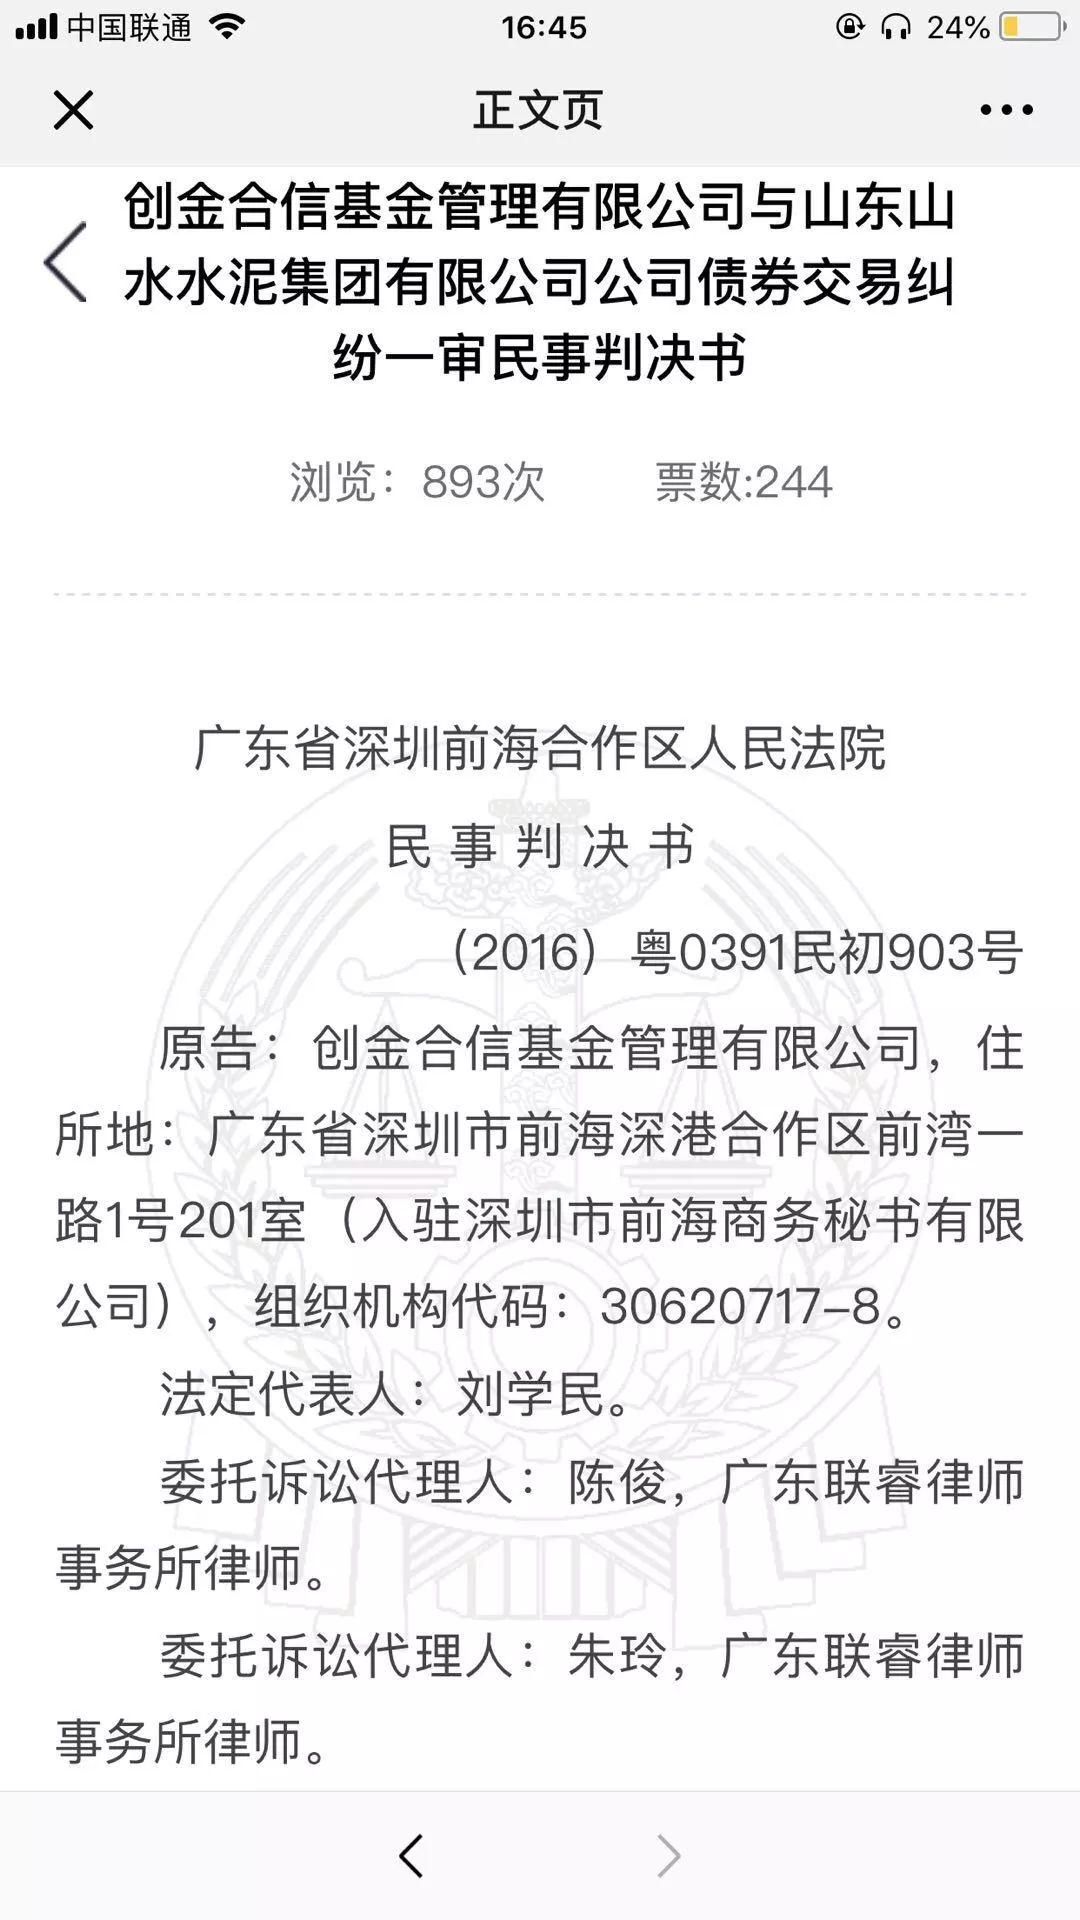 助力丨快来为深圳法院的两篇裁判文书投票